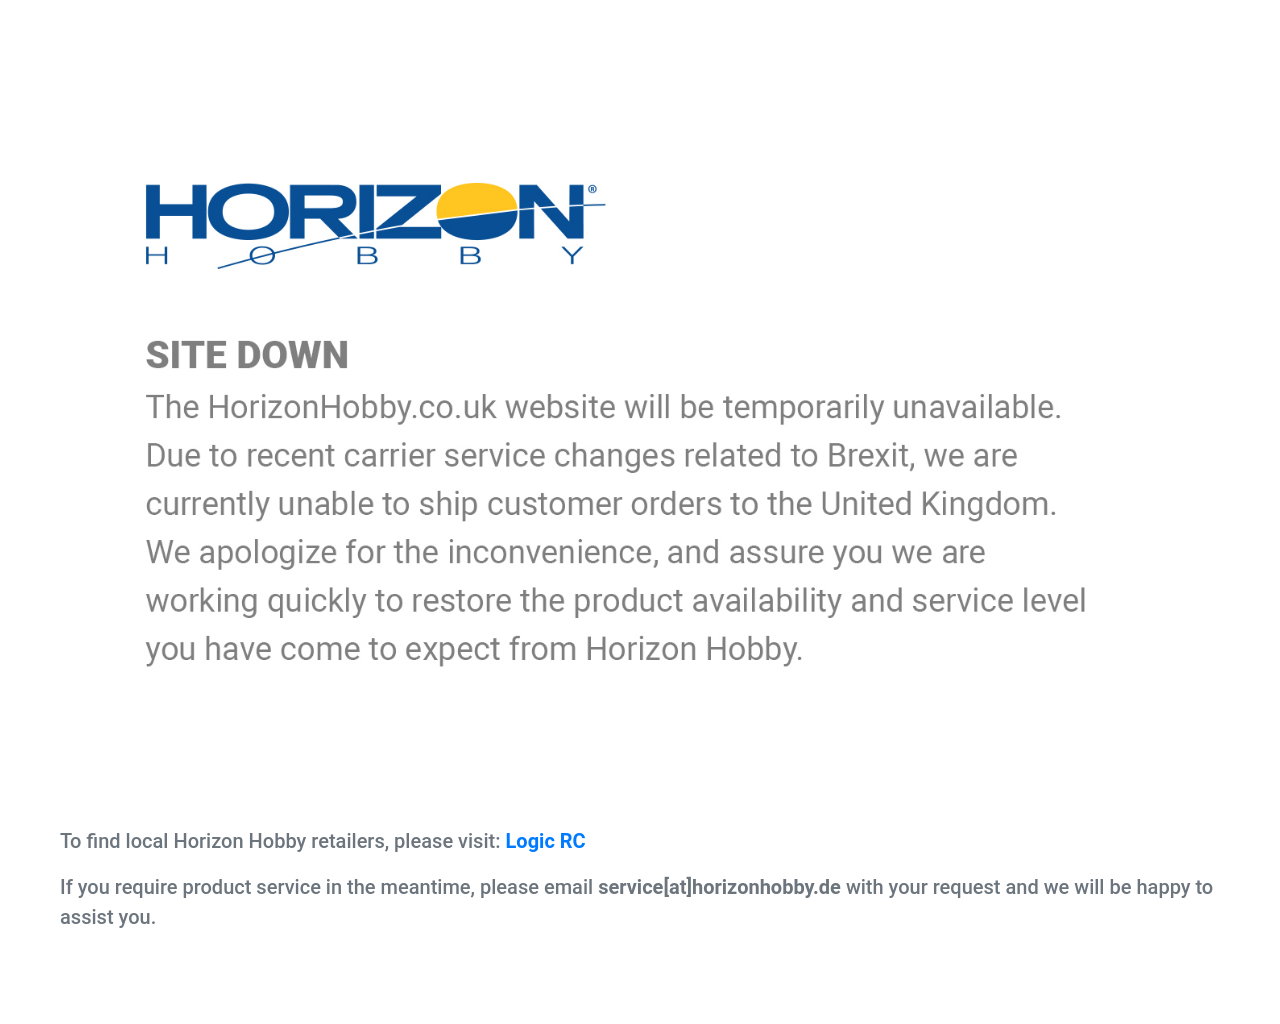 horizonhobby.co.uk